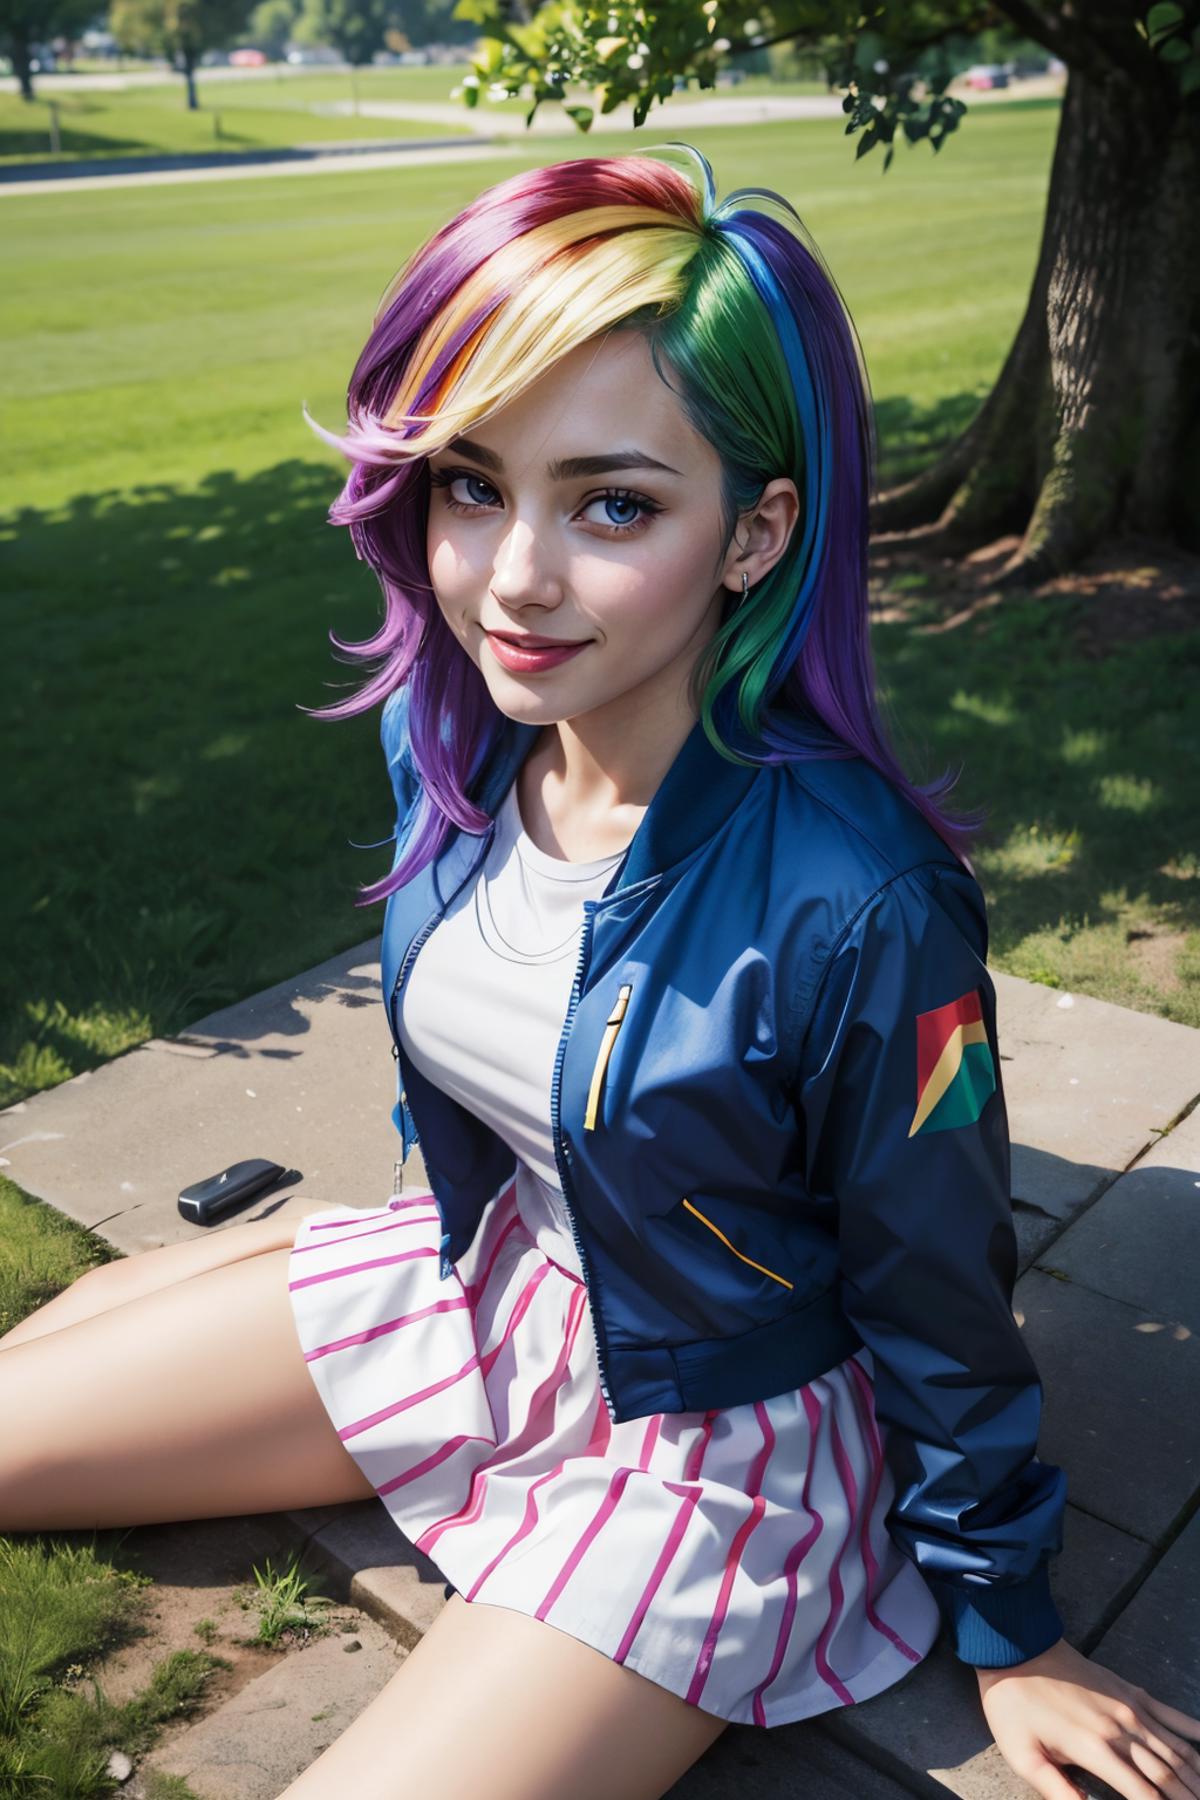 Rainbow Dash | My Little Pony / Equestria Girls image by wikkitikki